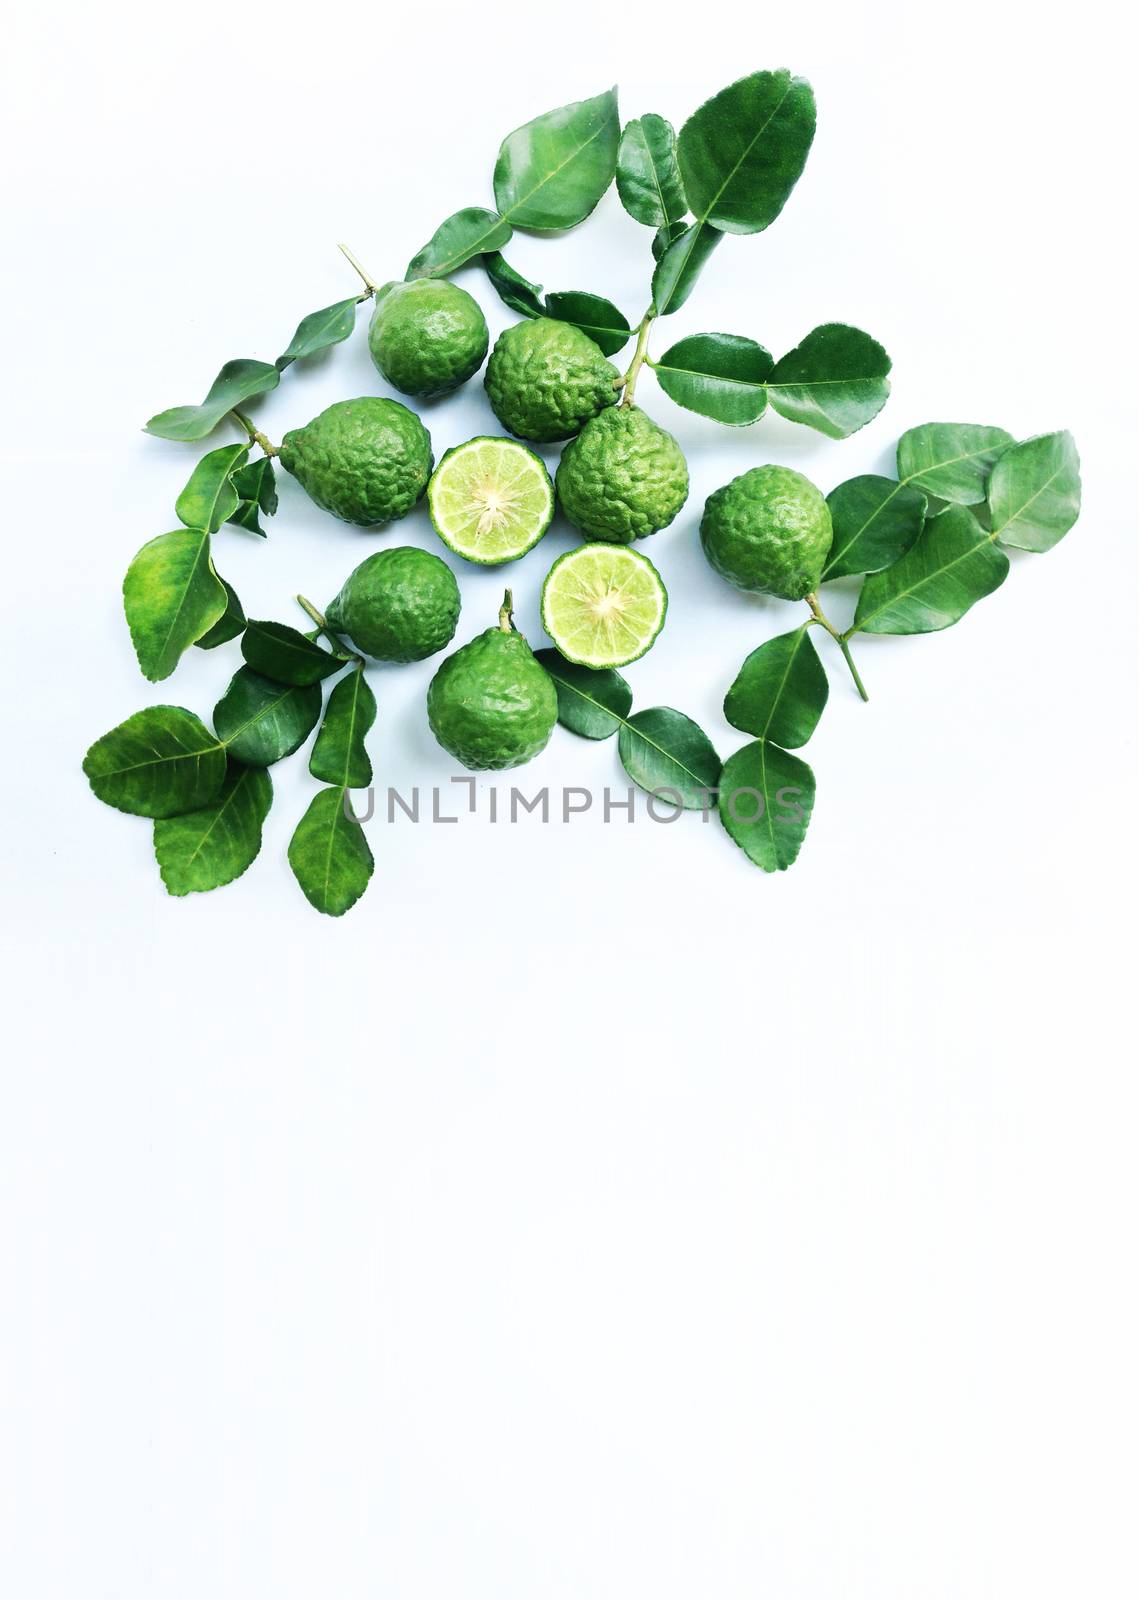 Kaffir Lime or Bergamot on white background by Bowonpat